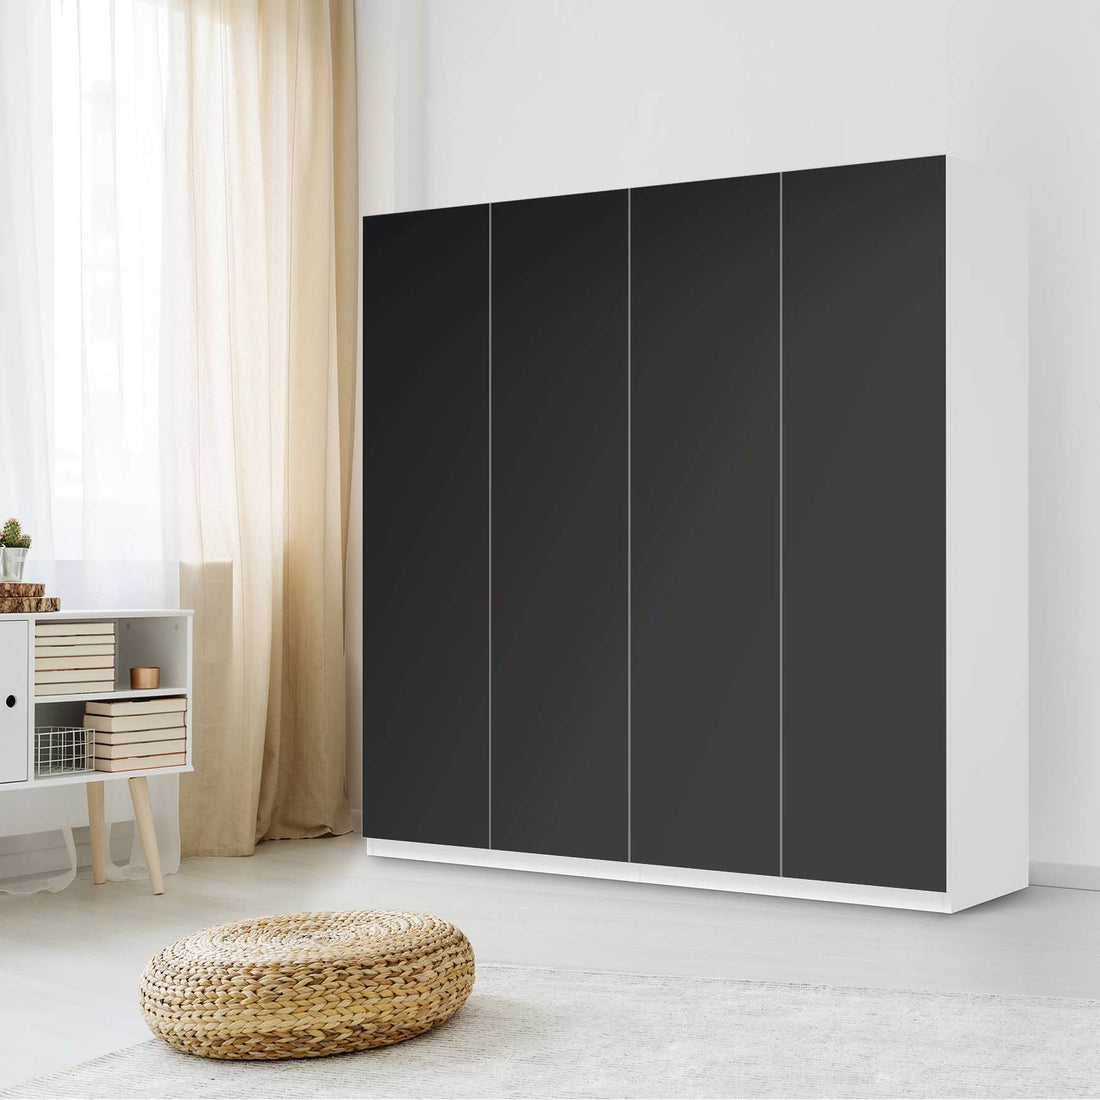 Klebefolie für Schränke Schwarz - IKEA Pax Schrank 201 cm Höhe - 4 Türen - Schlafzimmer